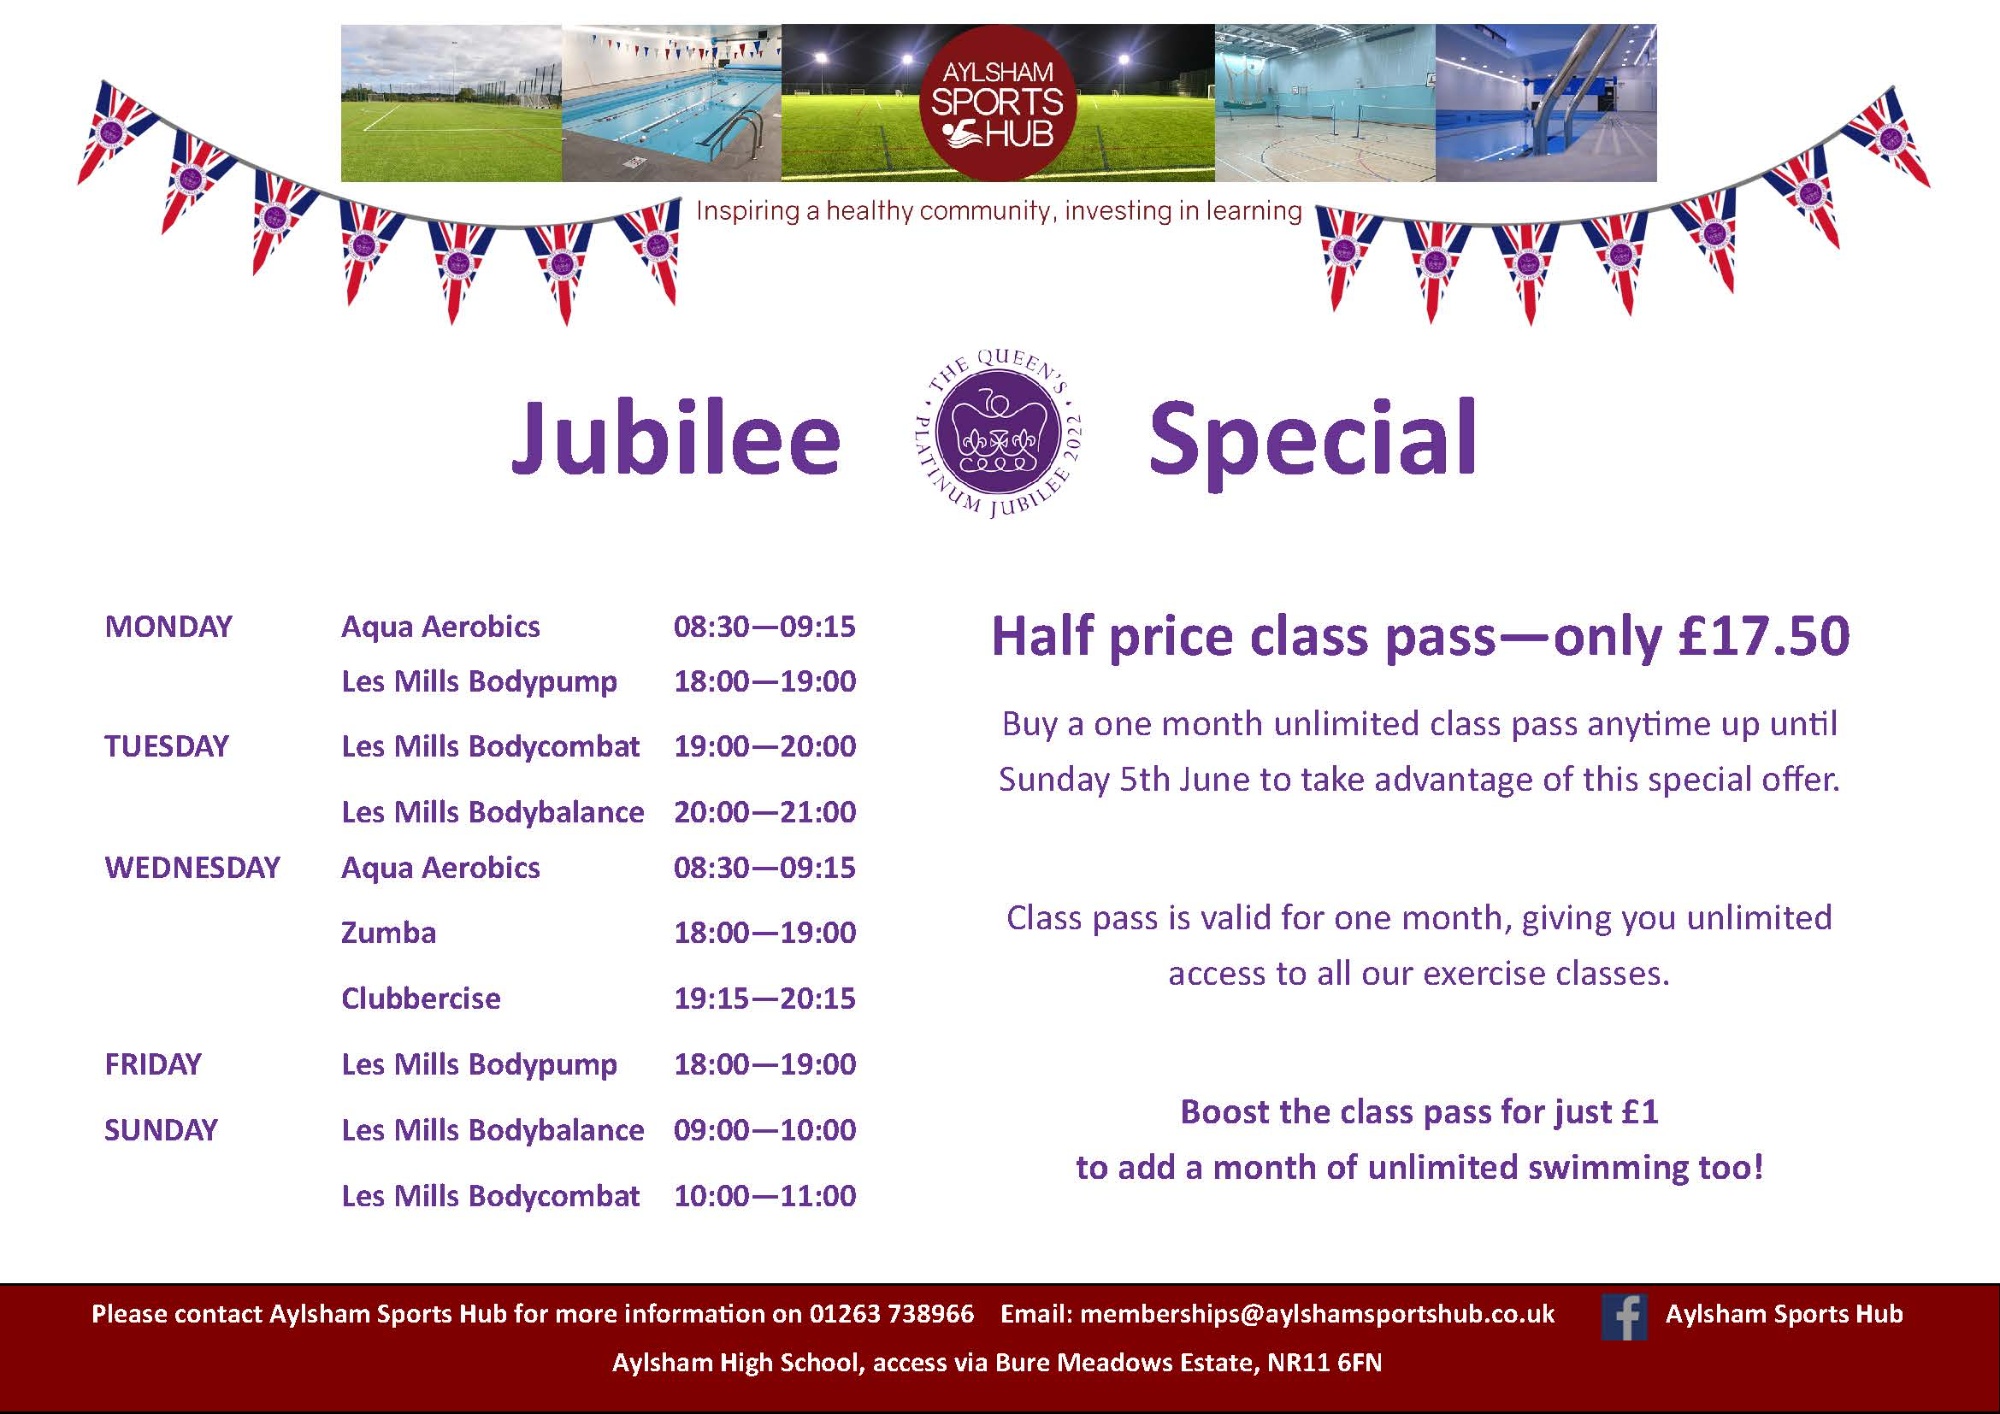 Aylsham Sports Hub Jubilee Exercise Class Offer